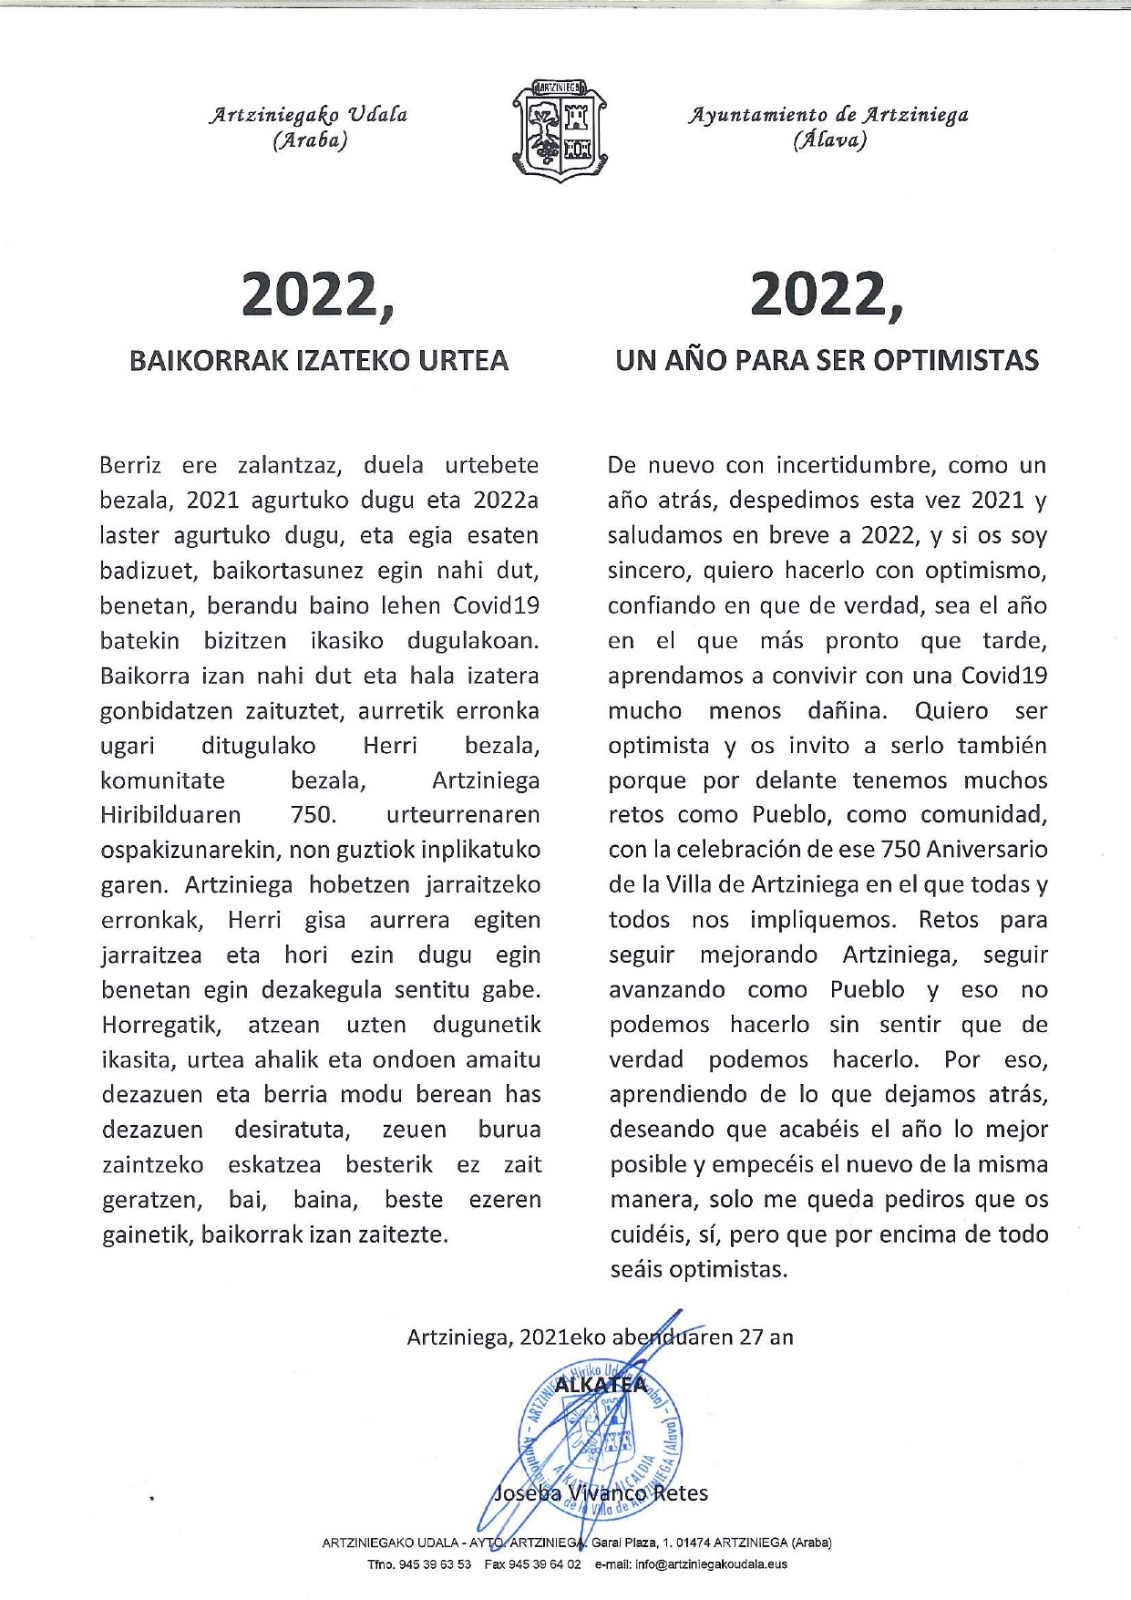 2022, UN AÑO PARA SER OPTIMISTAS